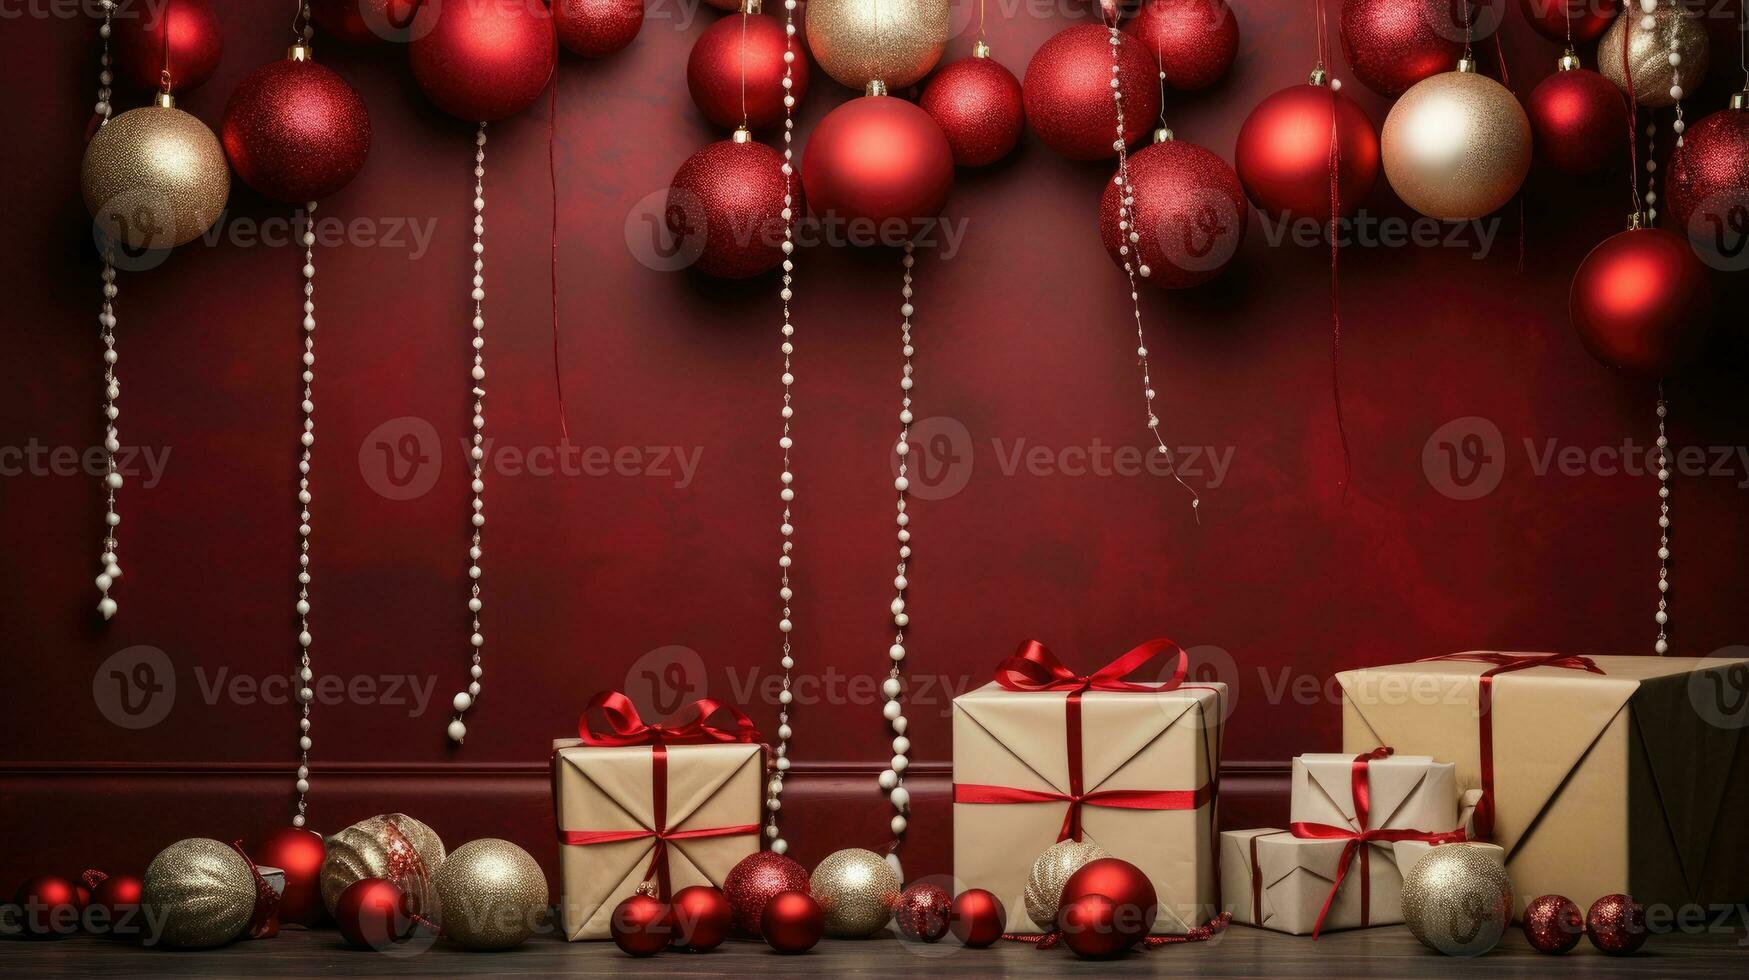 Navidad antecedentes con regalo cajas, ovillos de soga, documentos rollos y decoraciones en rojo foto